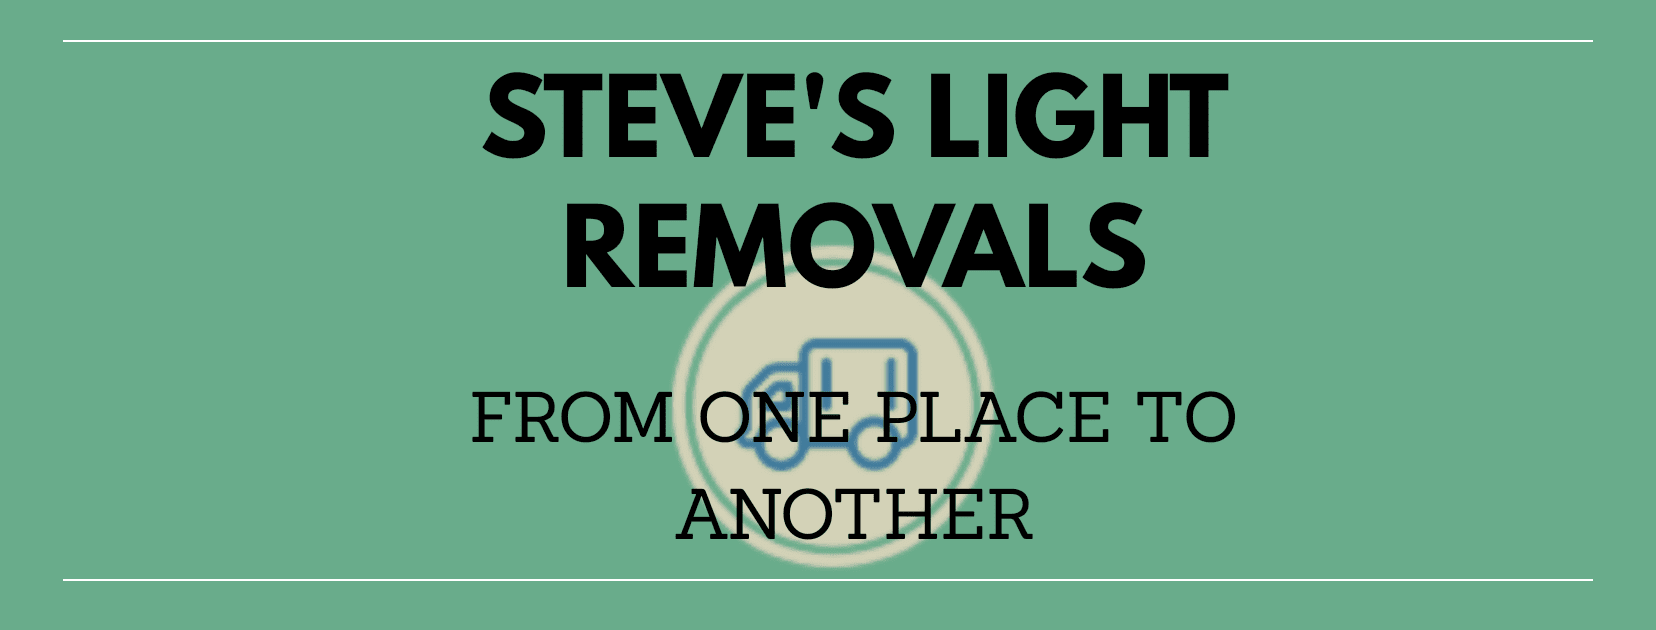 Steve's Light Removals